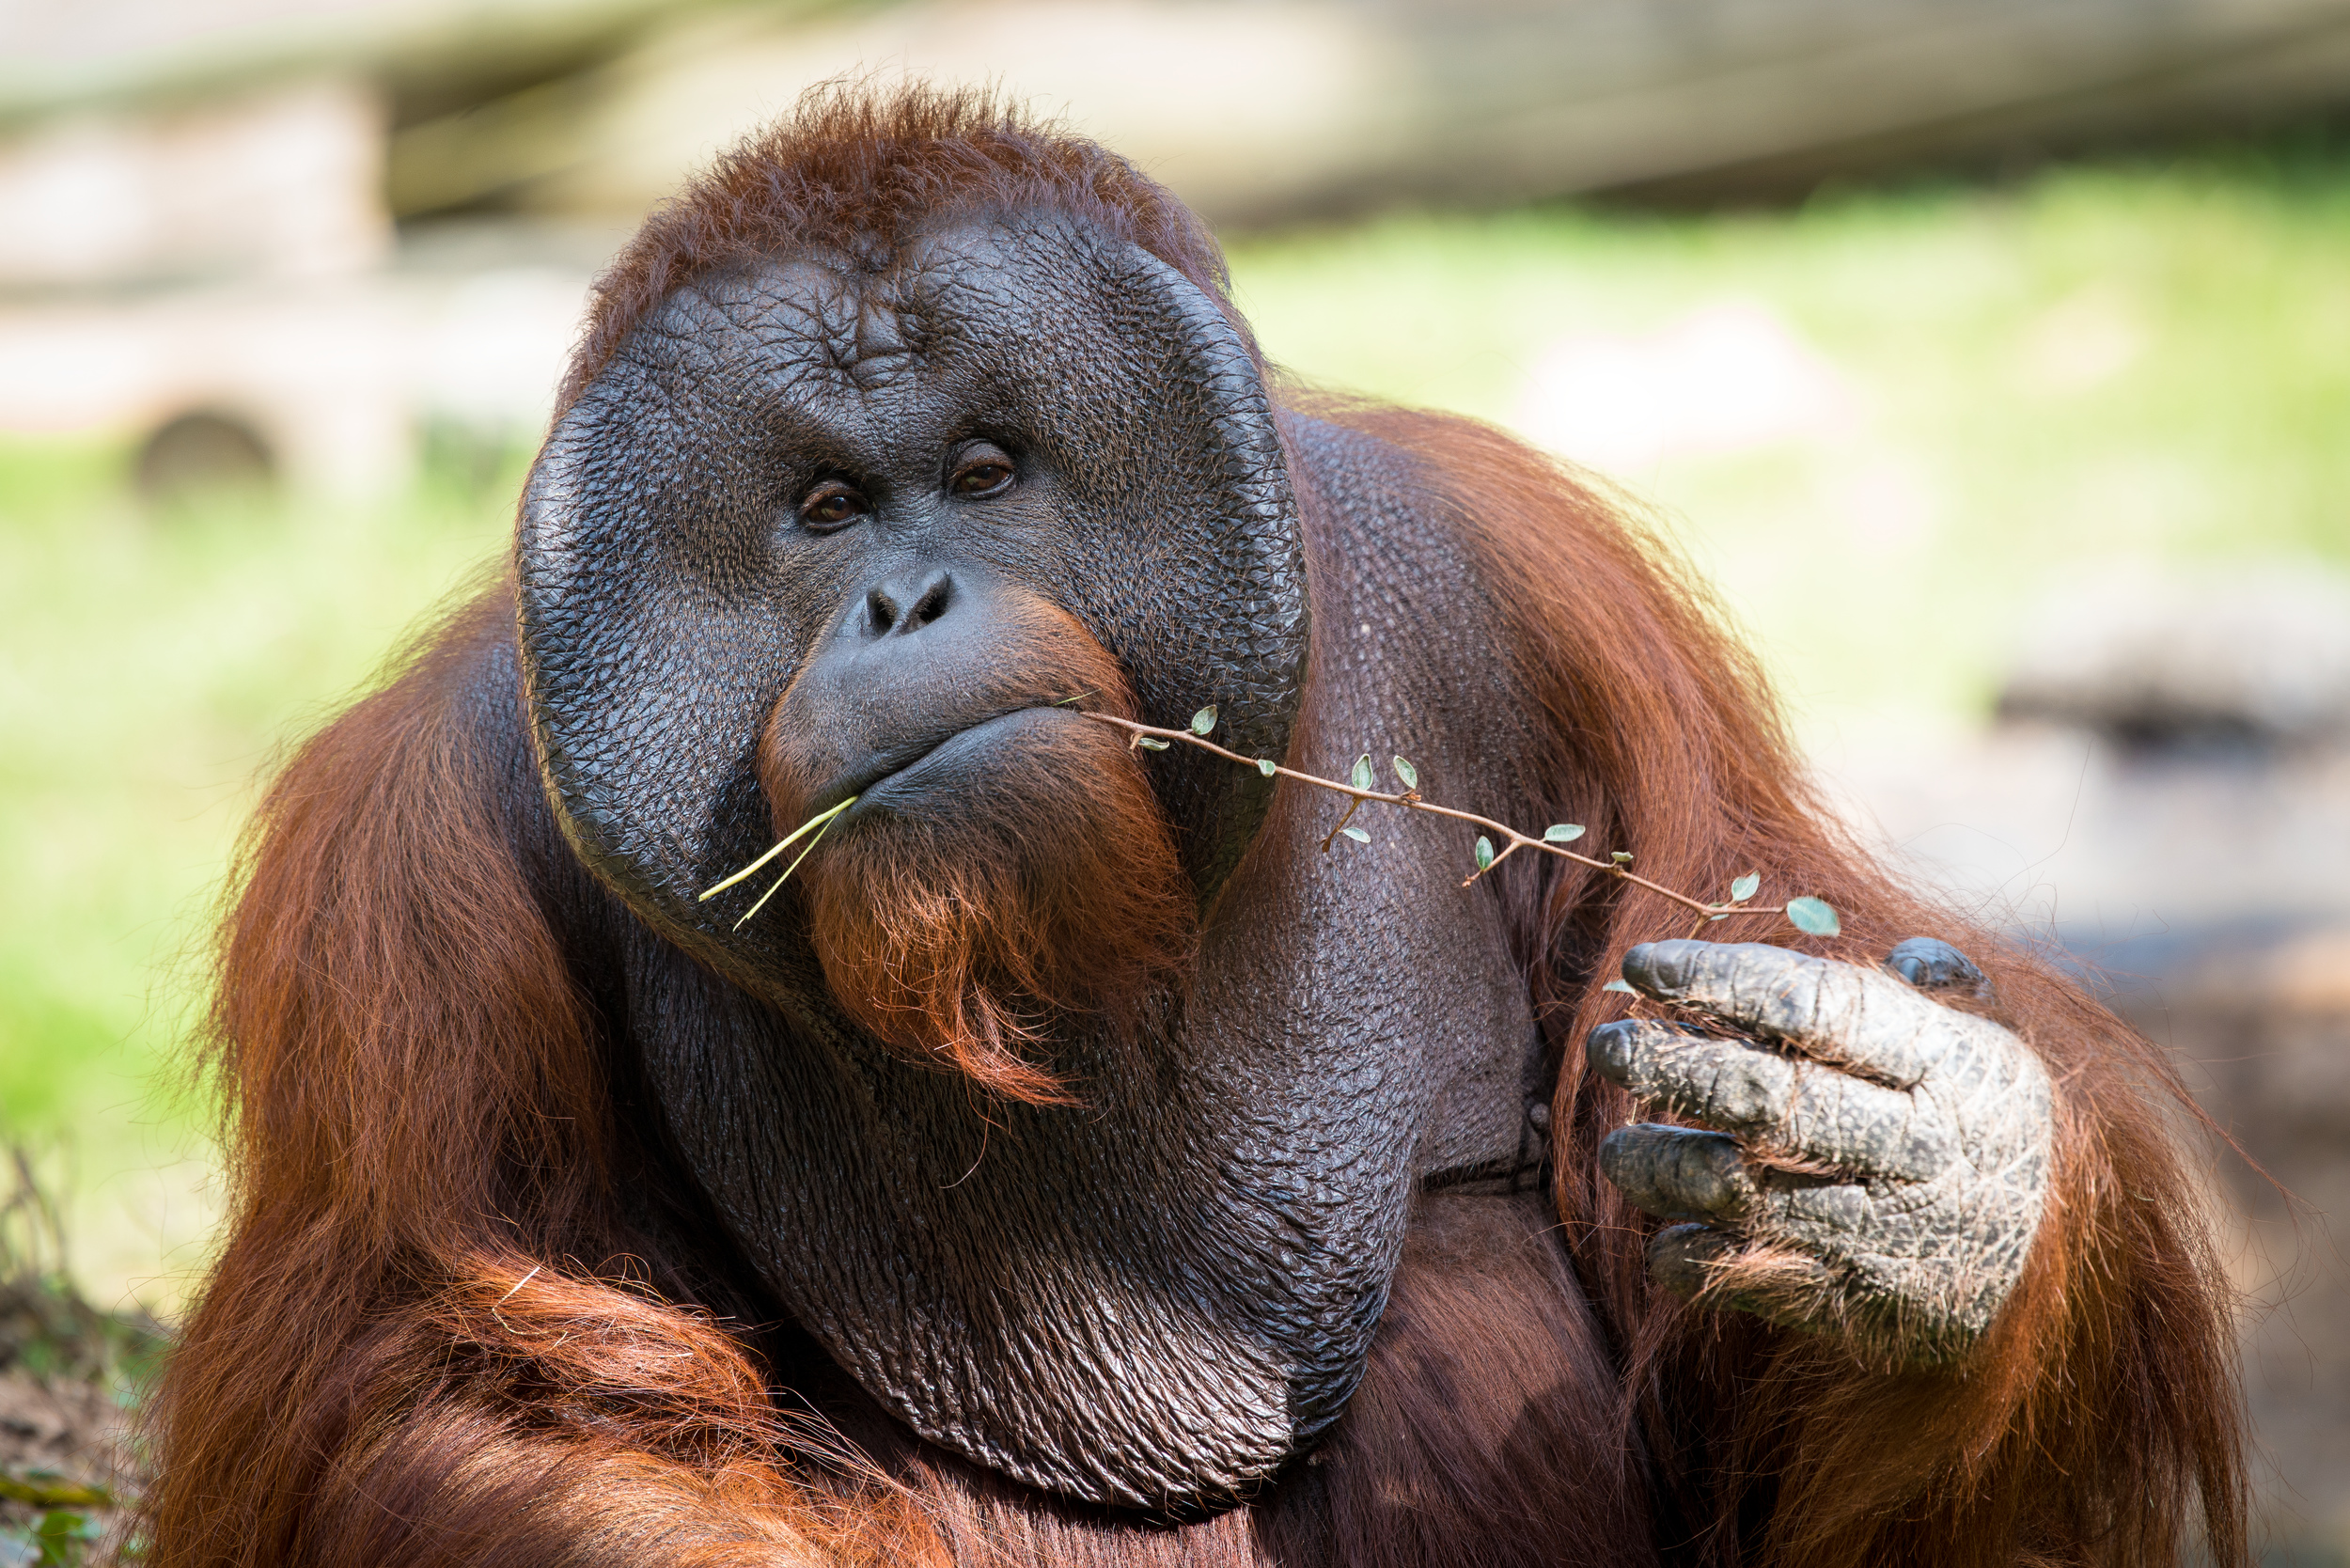 Saving Orangutans, One Bridge at a Time The Houston Zoo